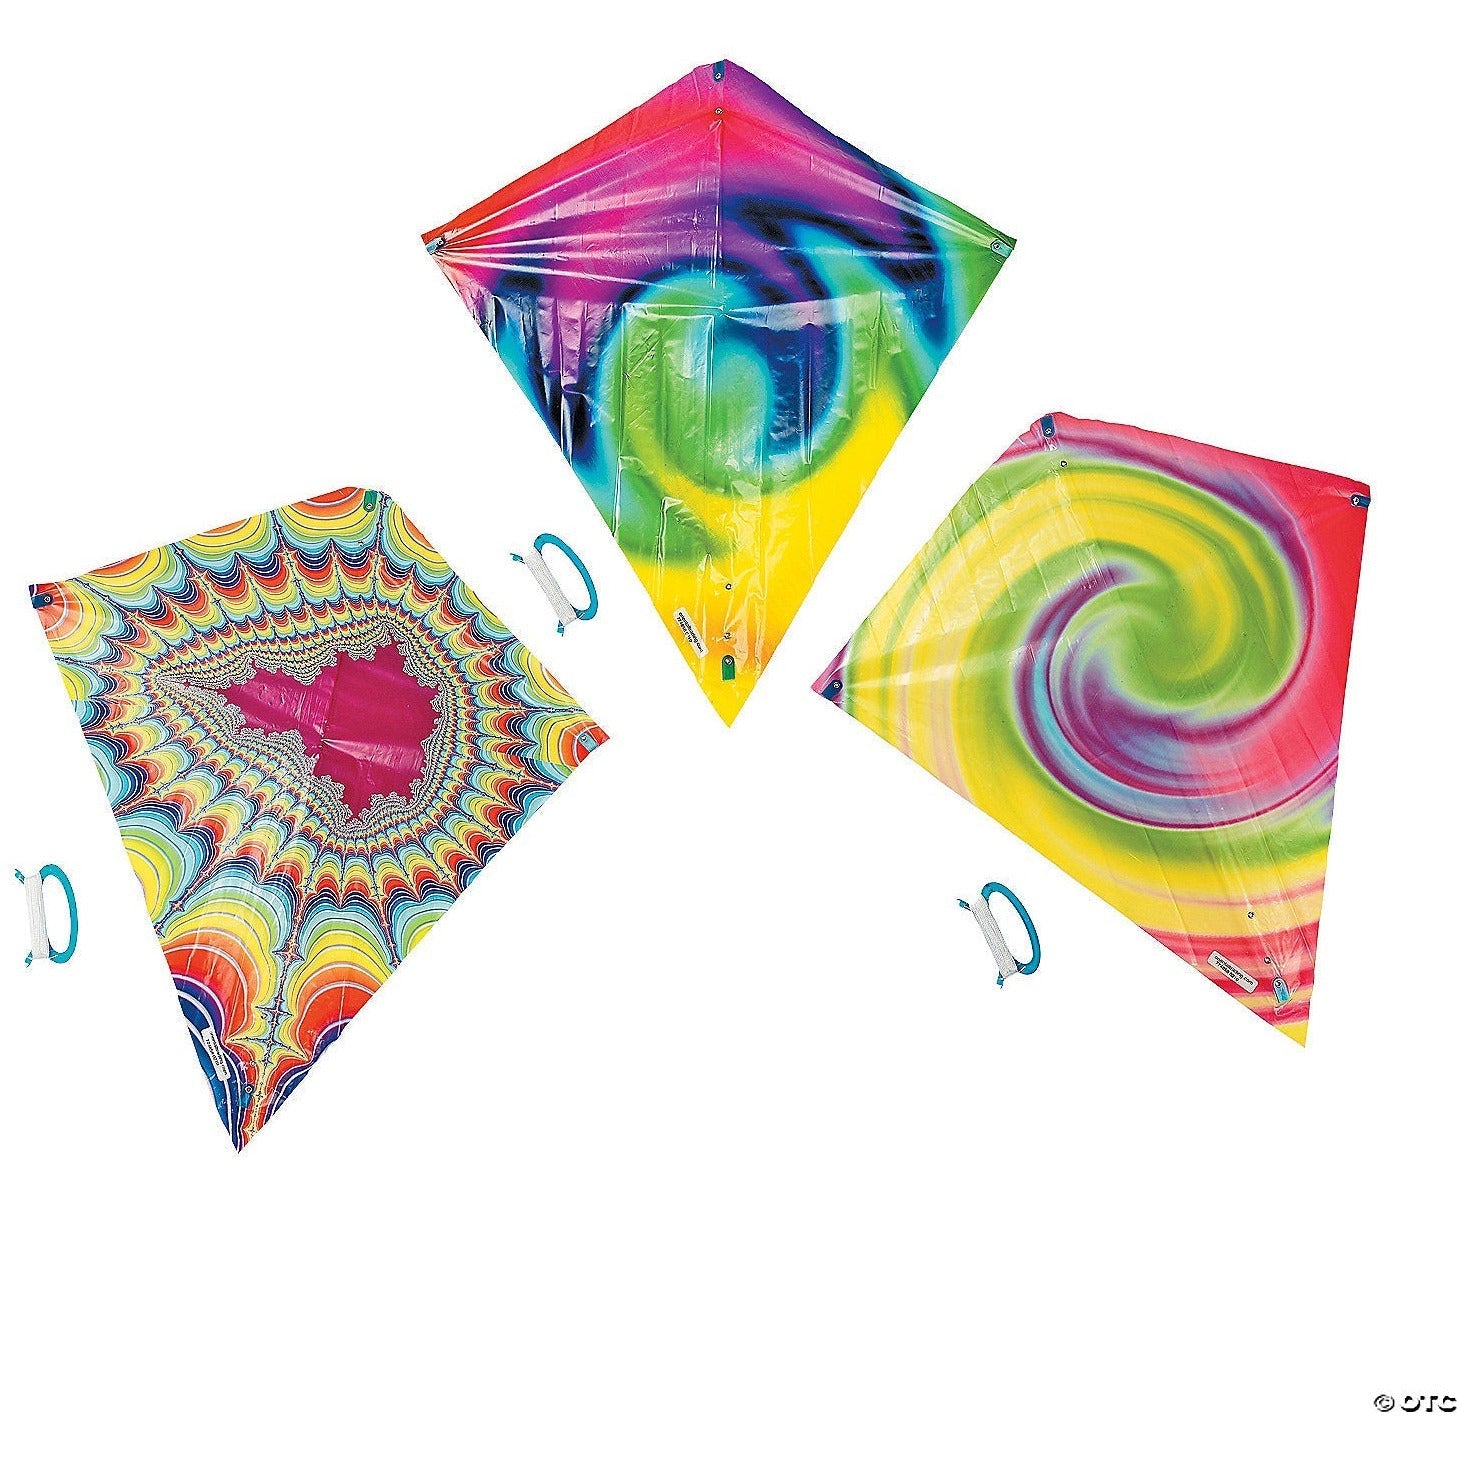 FUN EXPRESS TOYS Plastic Tie-Dyed Kites